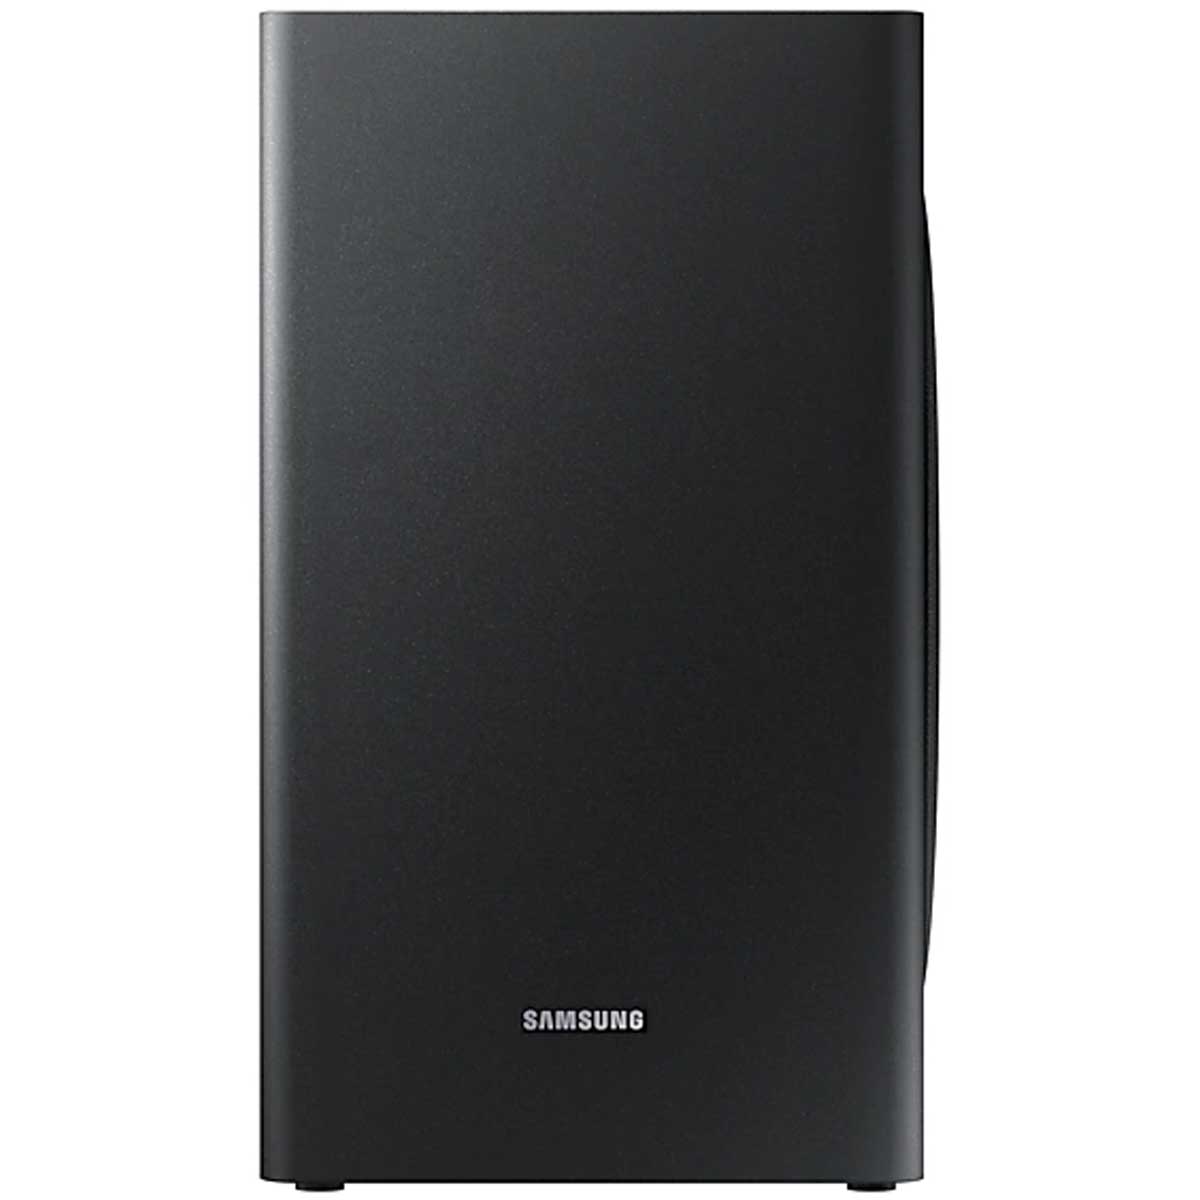 Loa Soundbar Samsung HW-R650/XV 3.1 CH